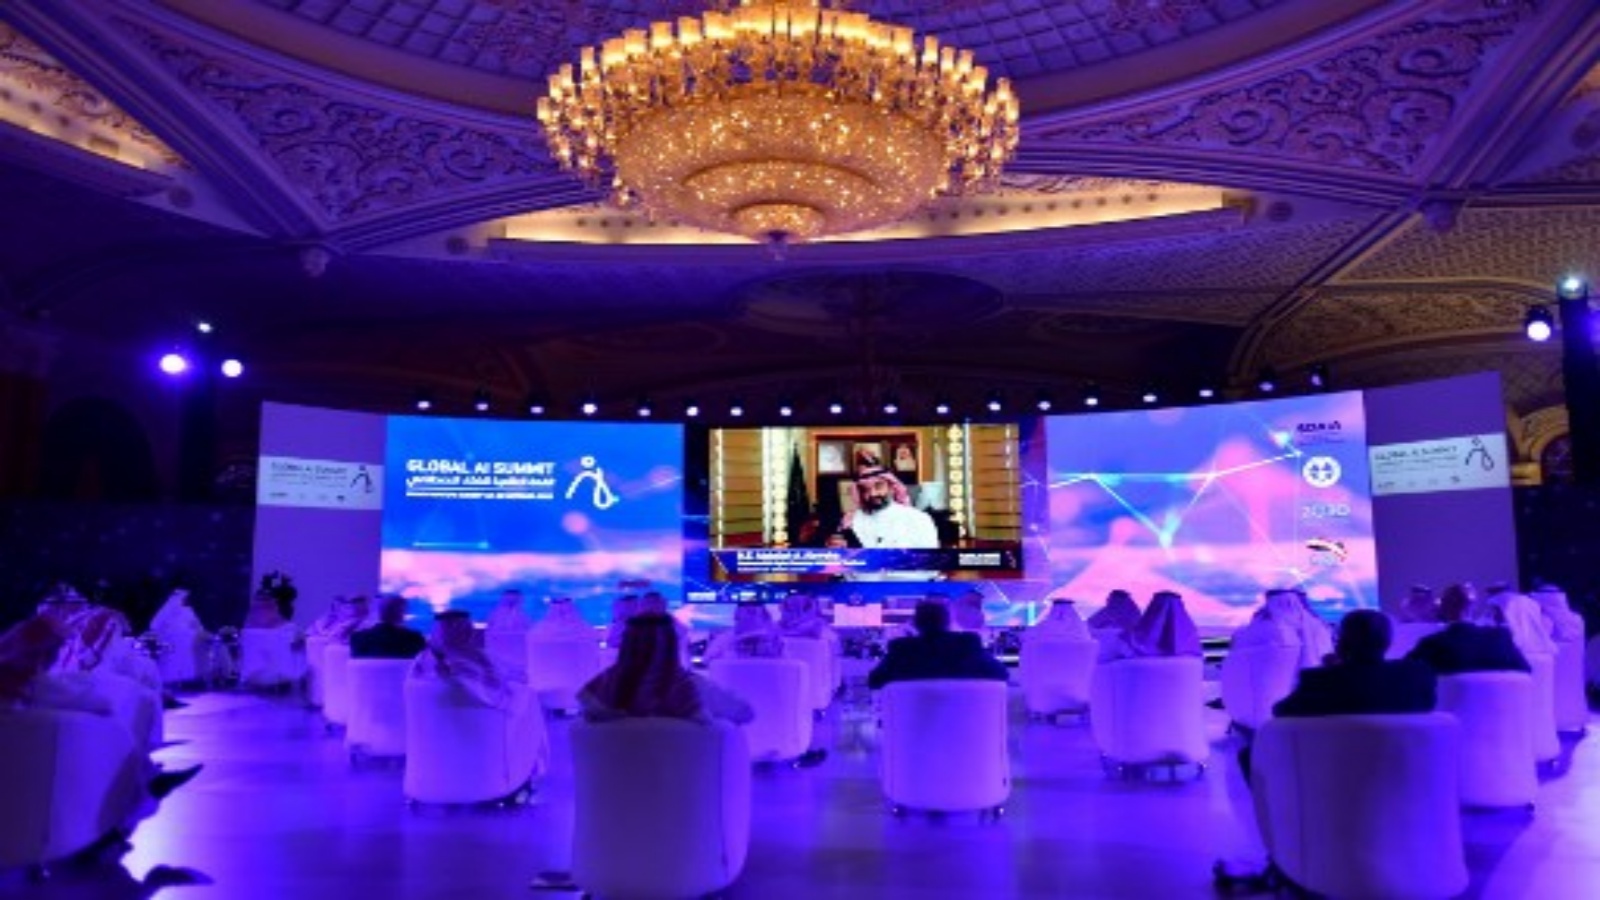 ضيوف القمة العالمية للذكاء الاصطناعي 2020 (الذكاء الاصطناعي) في العاصمة السعودية الرياض في 21 أكتوبر 2020. وتجمع القمة التي تنظمها الهيئة السعودية للبيانات والذكاء الاصطناعي (SDAIA) والأمانة السعودية لمجموعة العشرين كجزء من برنامج المؤتمرات الدولية. أصحاب المصلحة من القطاع العام والأوساط الأكاديمية والقطاع الخاص ، بما في ذلك شركات التكنولوجيا والمستثمرين ورجال الأعمال والشركات الناشئة لتشكيل مستقبل الذكاء الاصطناعي (AI)